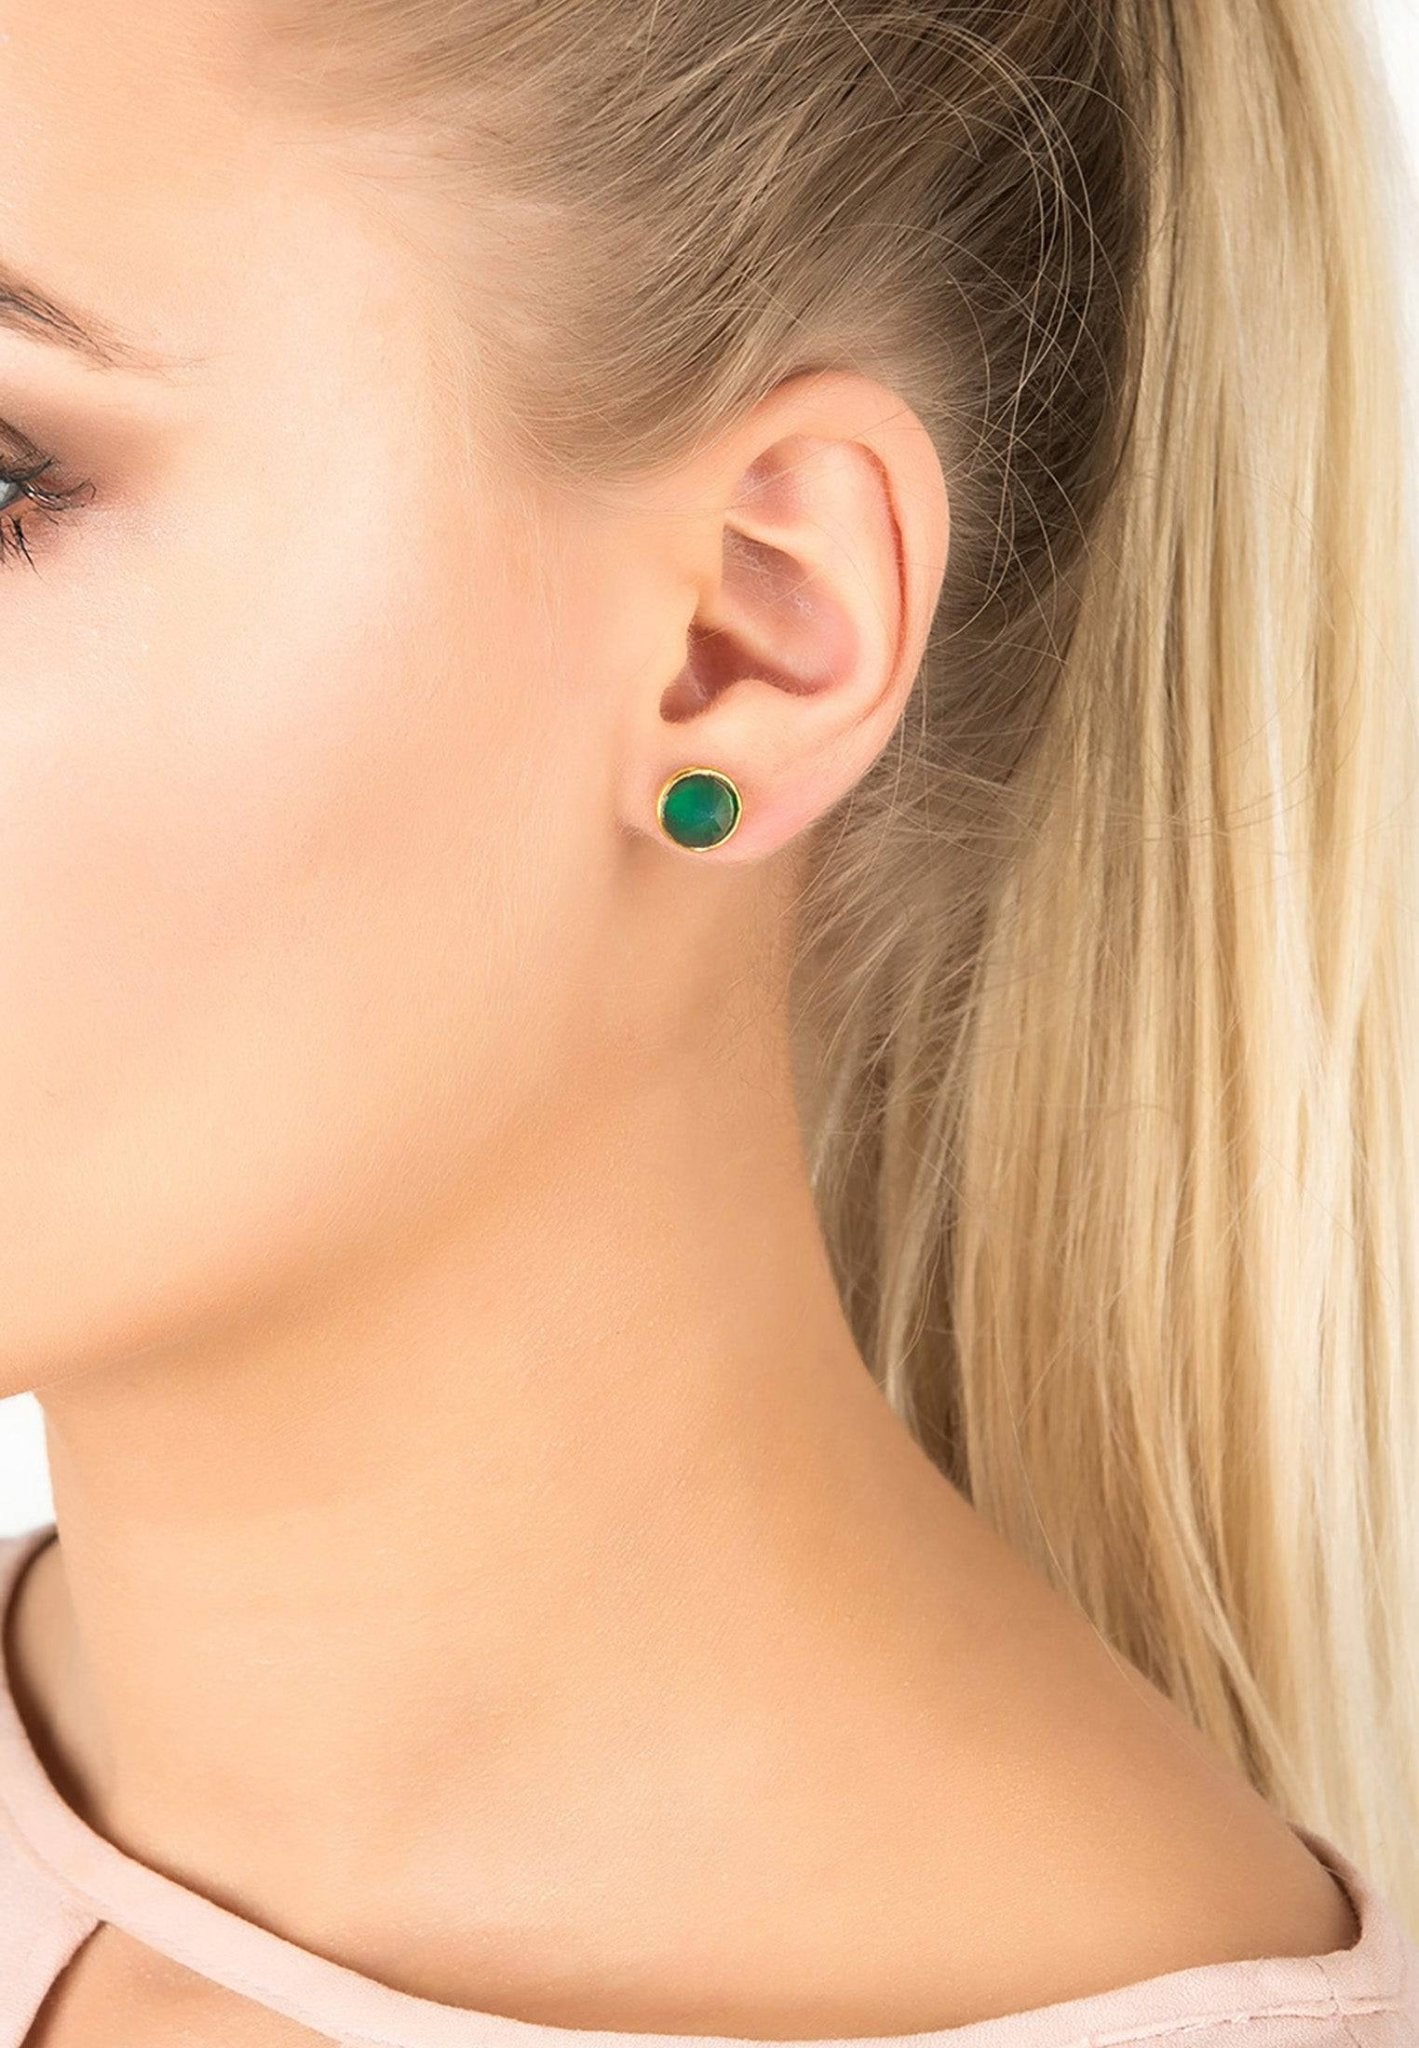 Pia Gemstone Spike Earring Gold Green Onyx - LATELITA Earrings